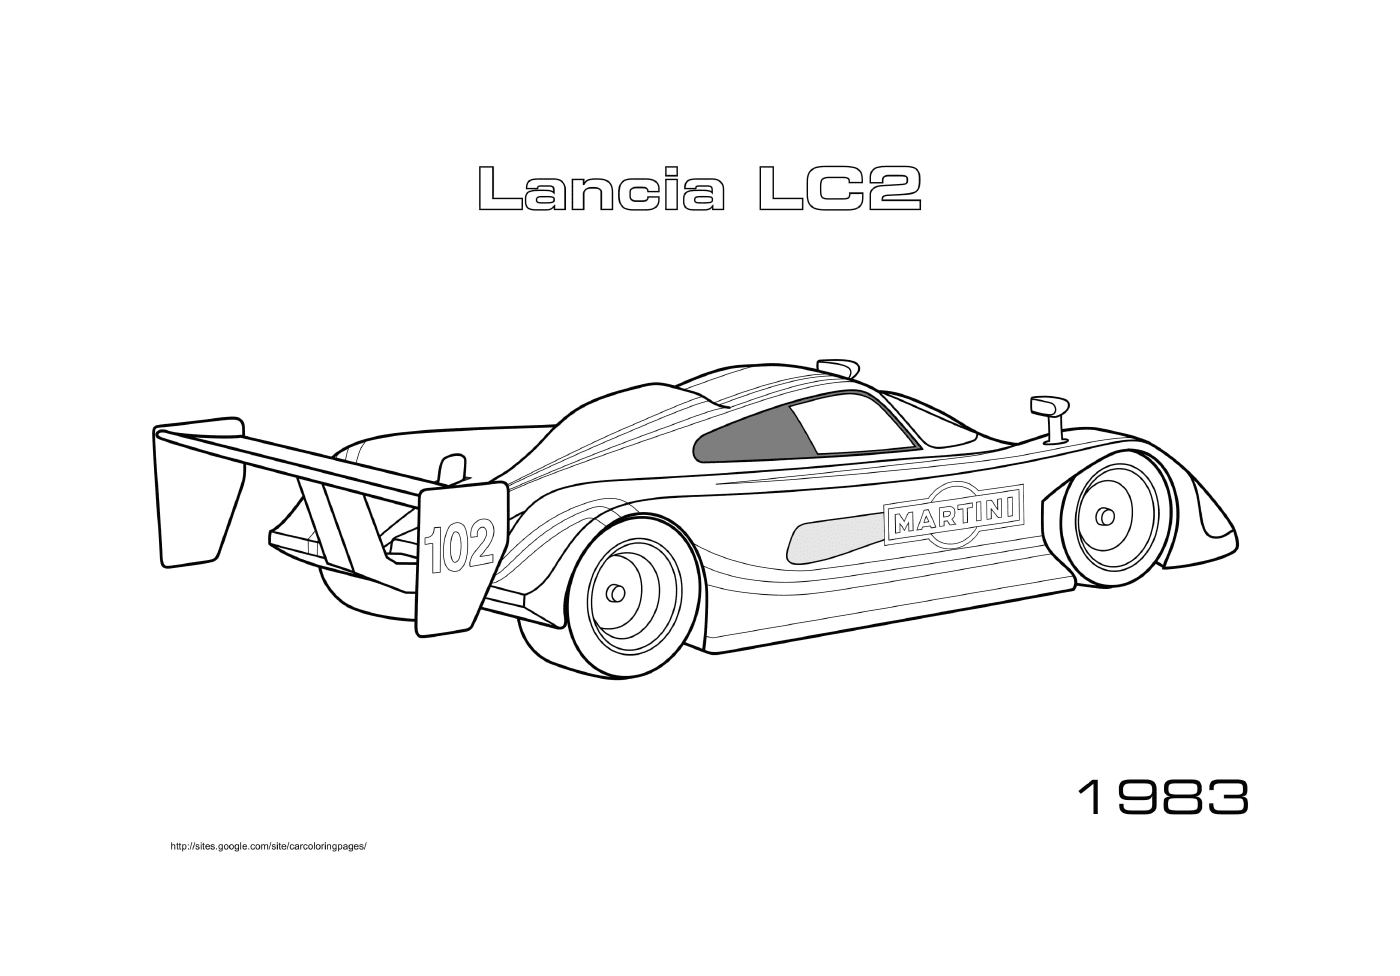  Lancia Lc2 de 1983 